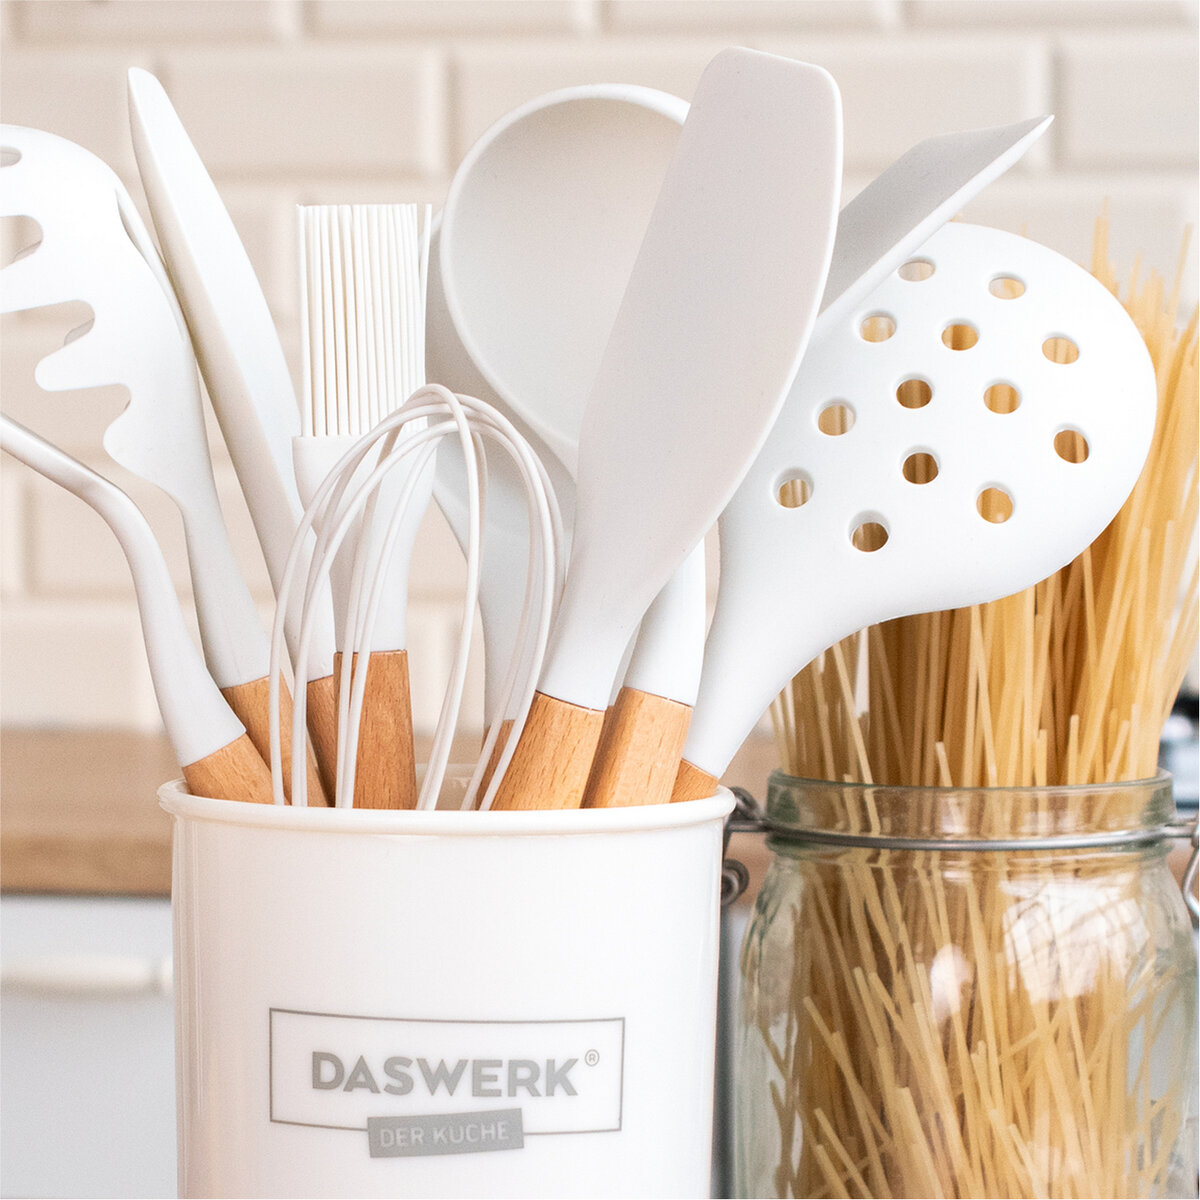 Набор кухонных принадлежностей DASWERK силиконовые с деревянными ручками 12 в 1 - фото 4